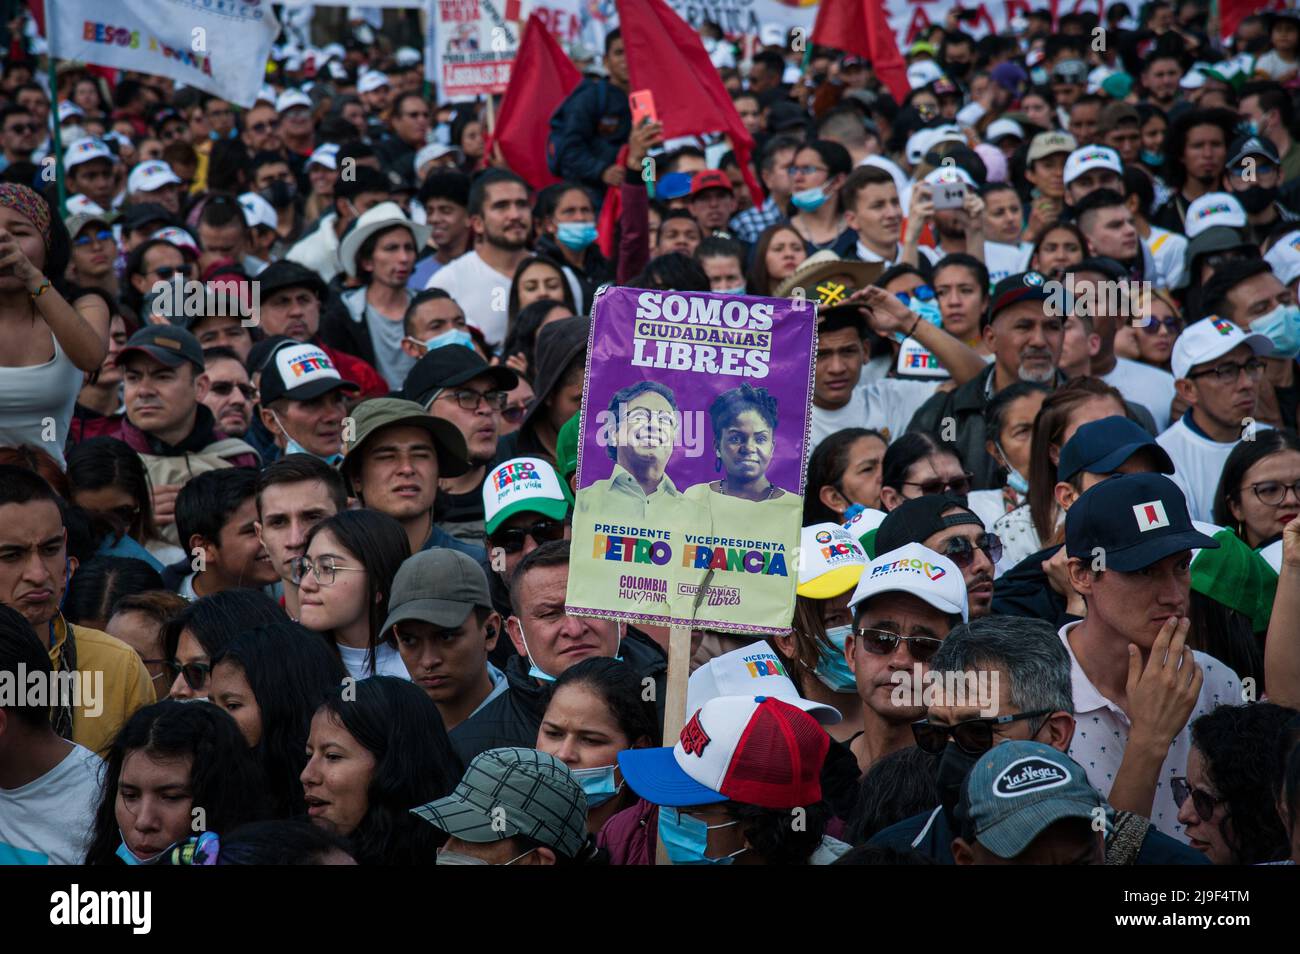 Un banner che recita "Siamo cittadini liberi” è visto durante il rally della campagna di chiusura del candidato presidenziale di sinistra per l'alleanza politica 'P Foto Stock